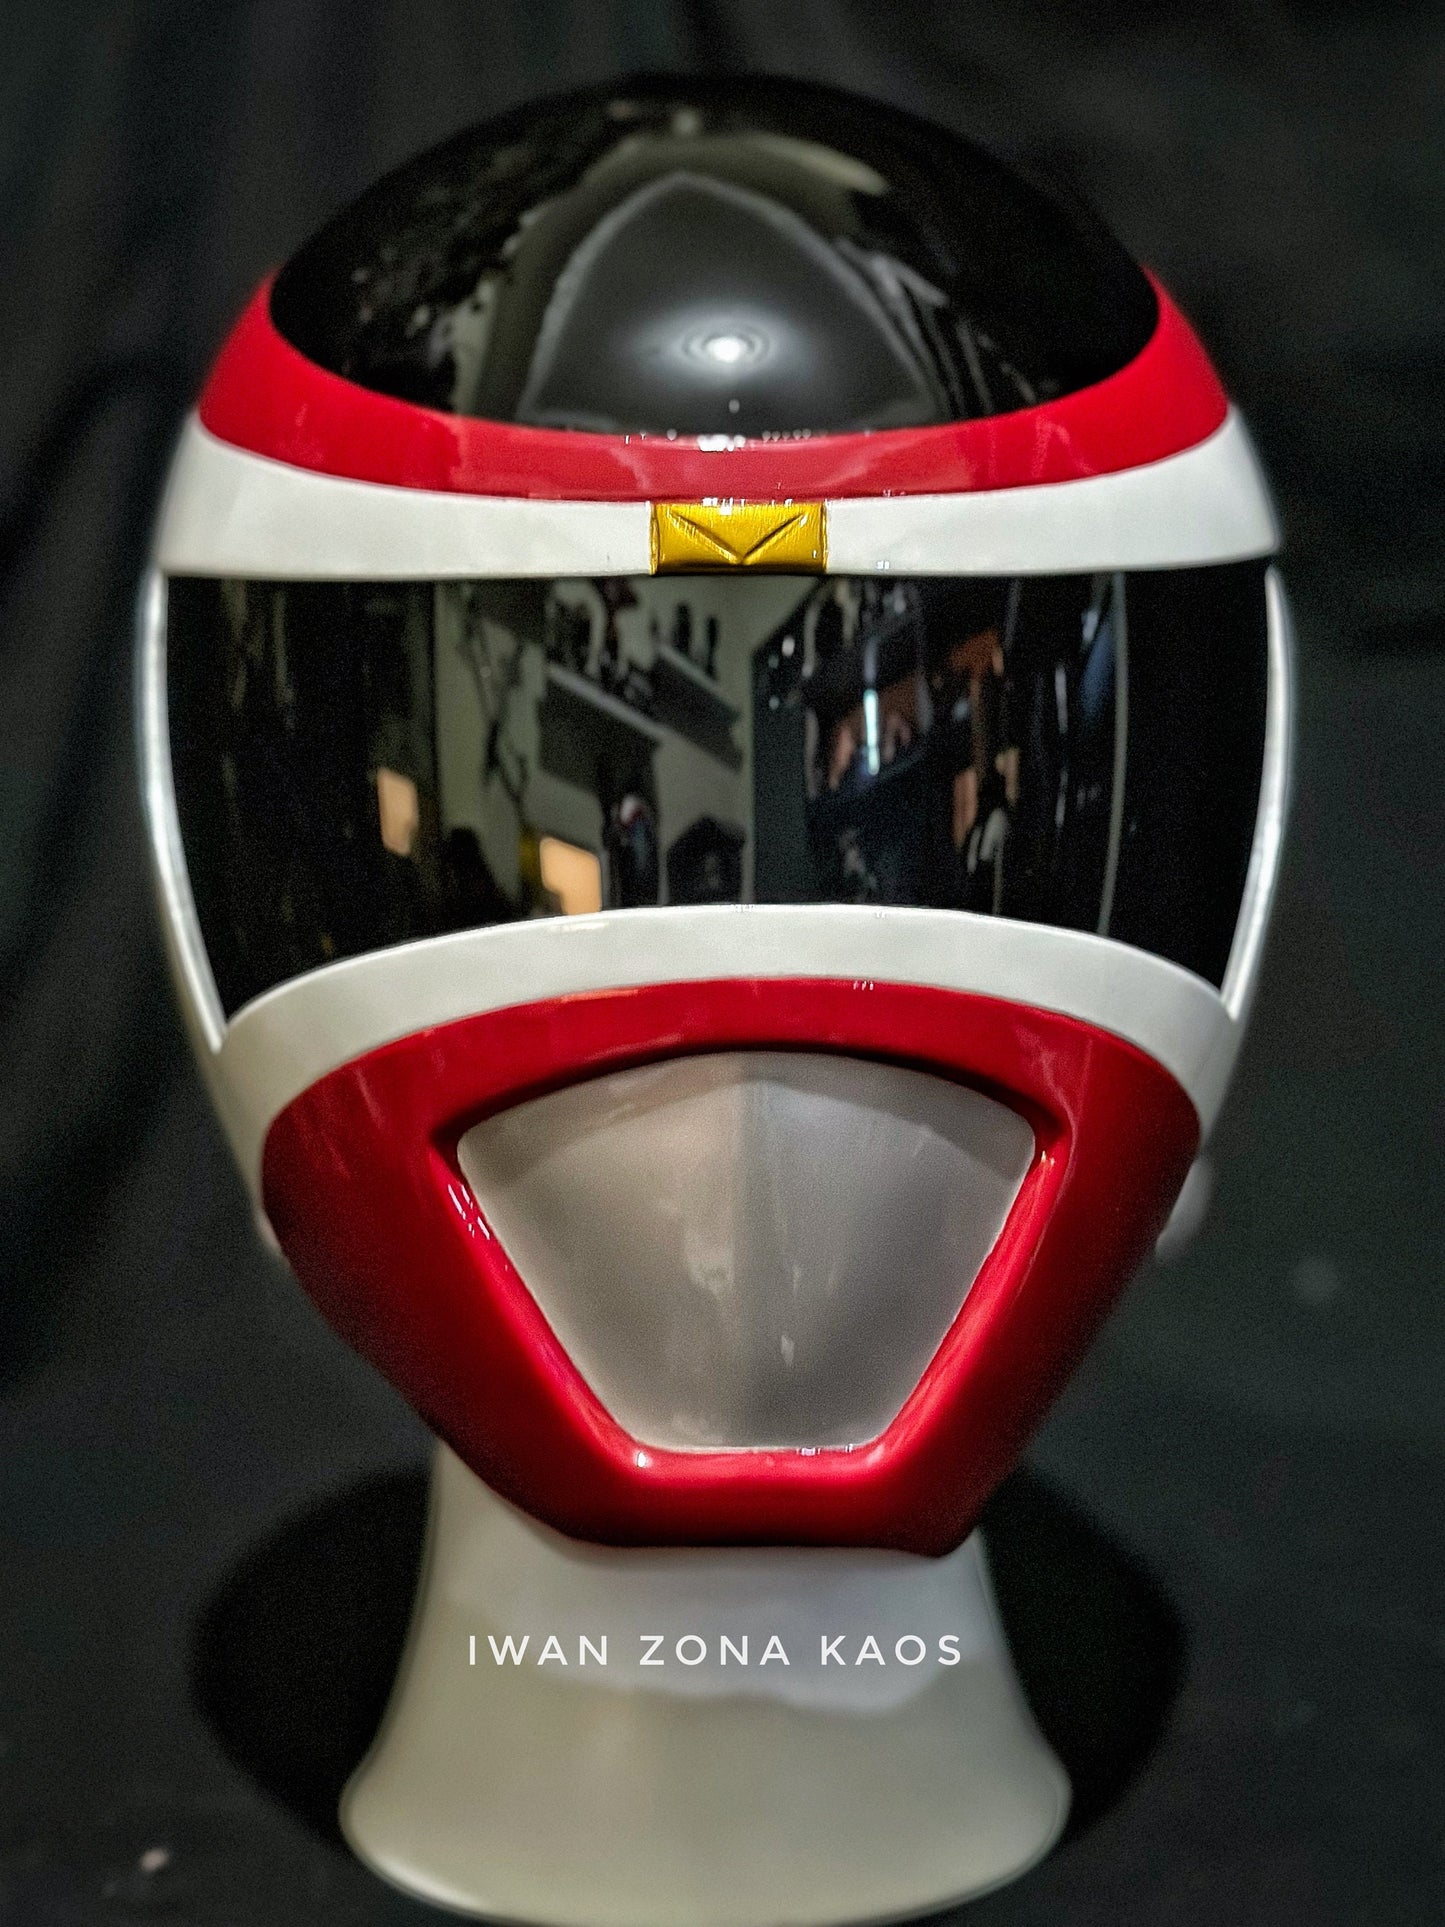 red space ranger helmet / denji sentai megaranger helmet